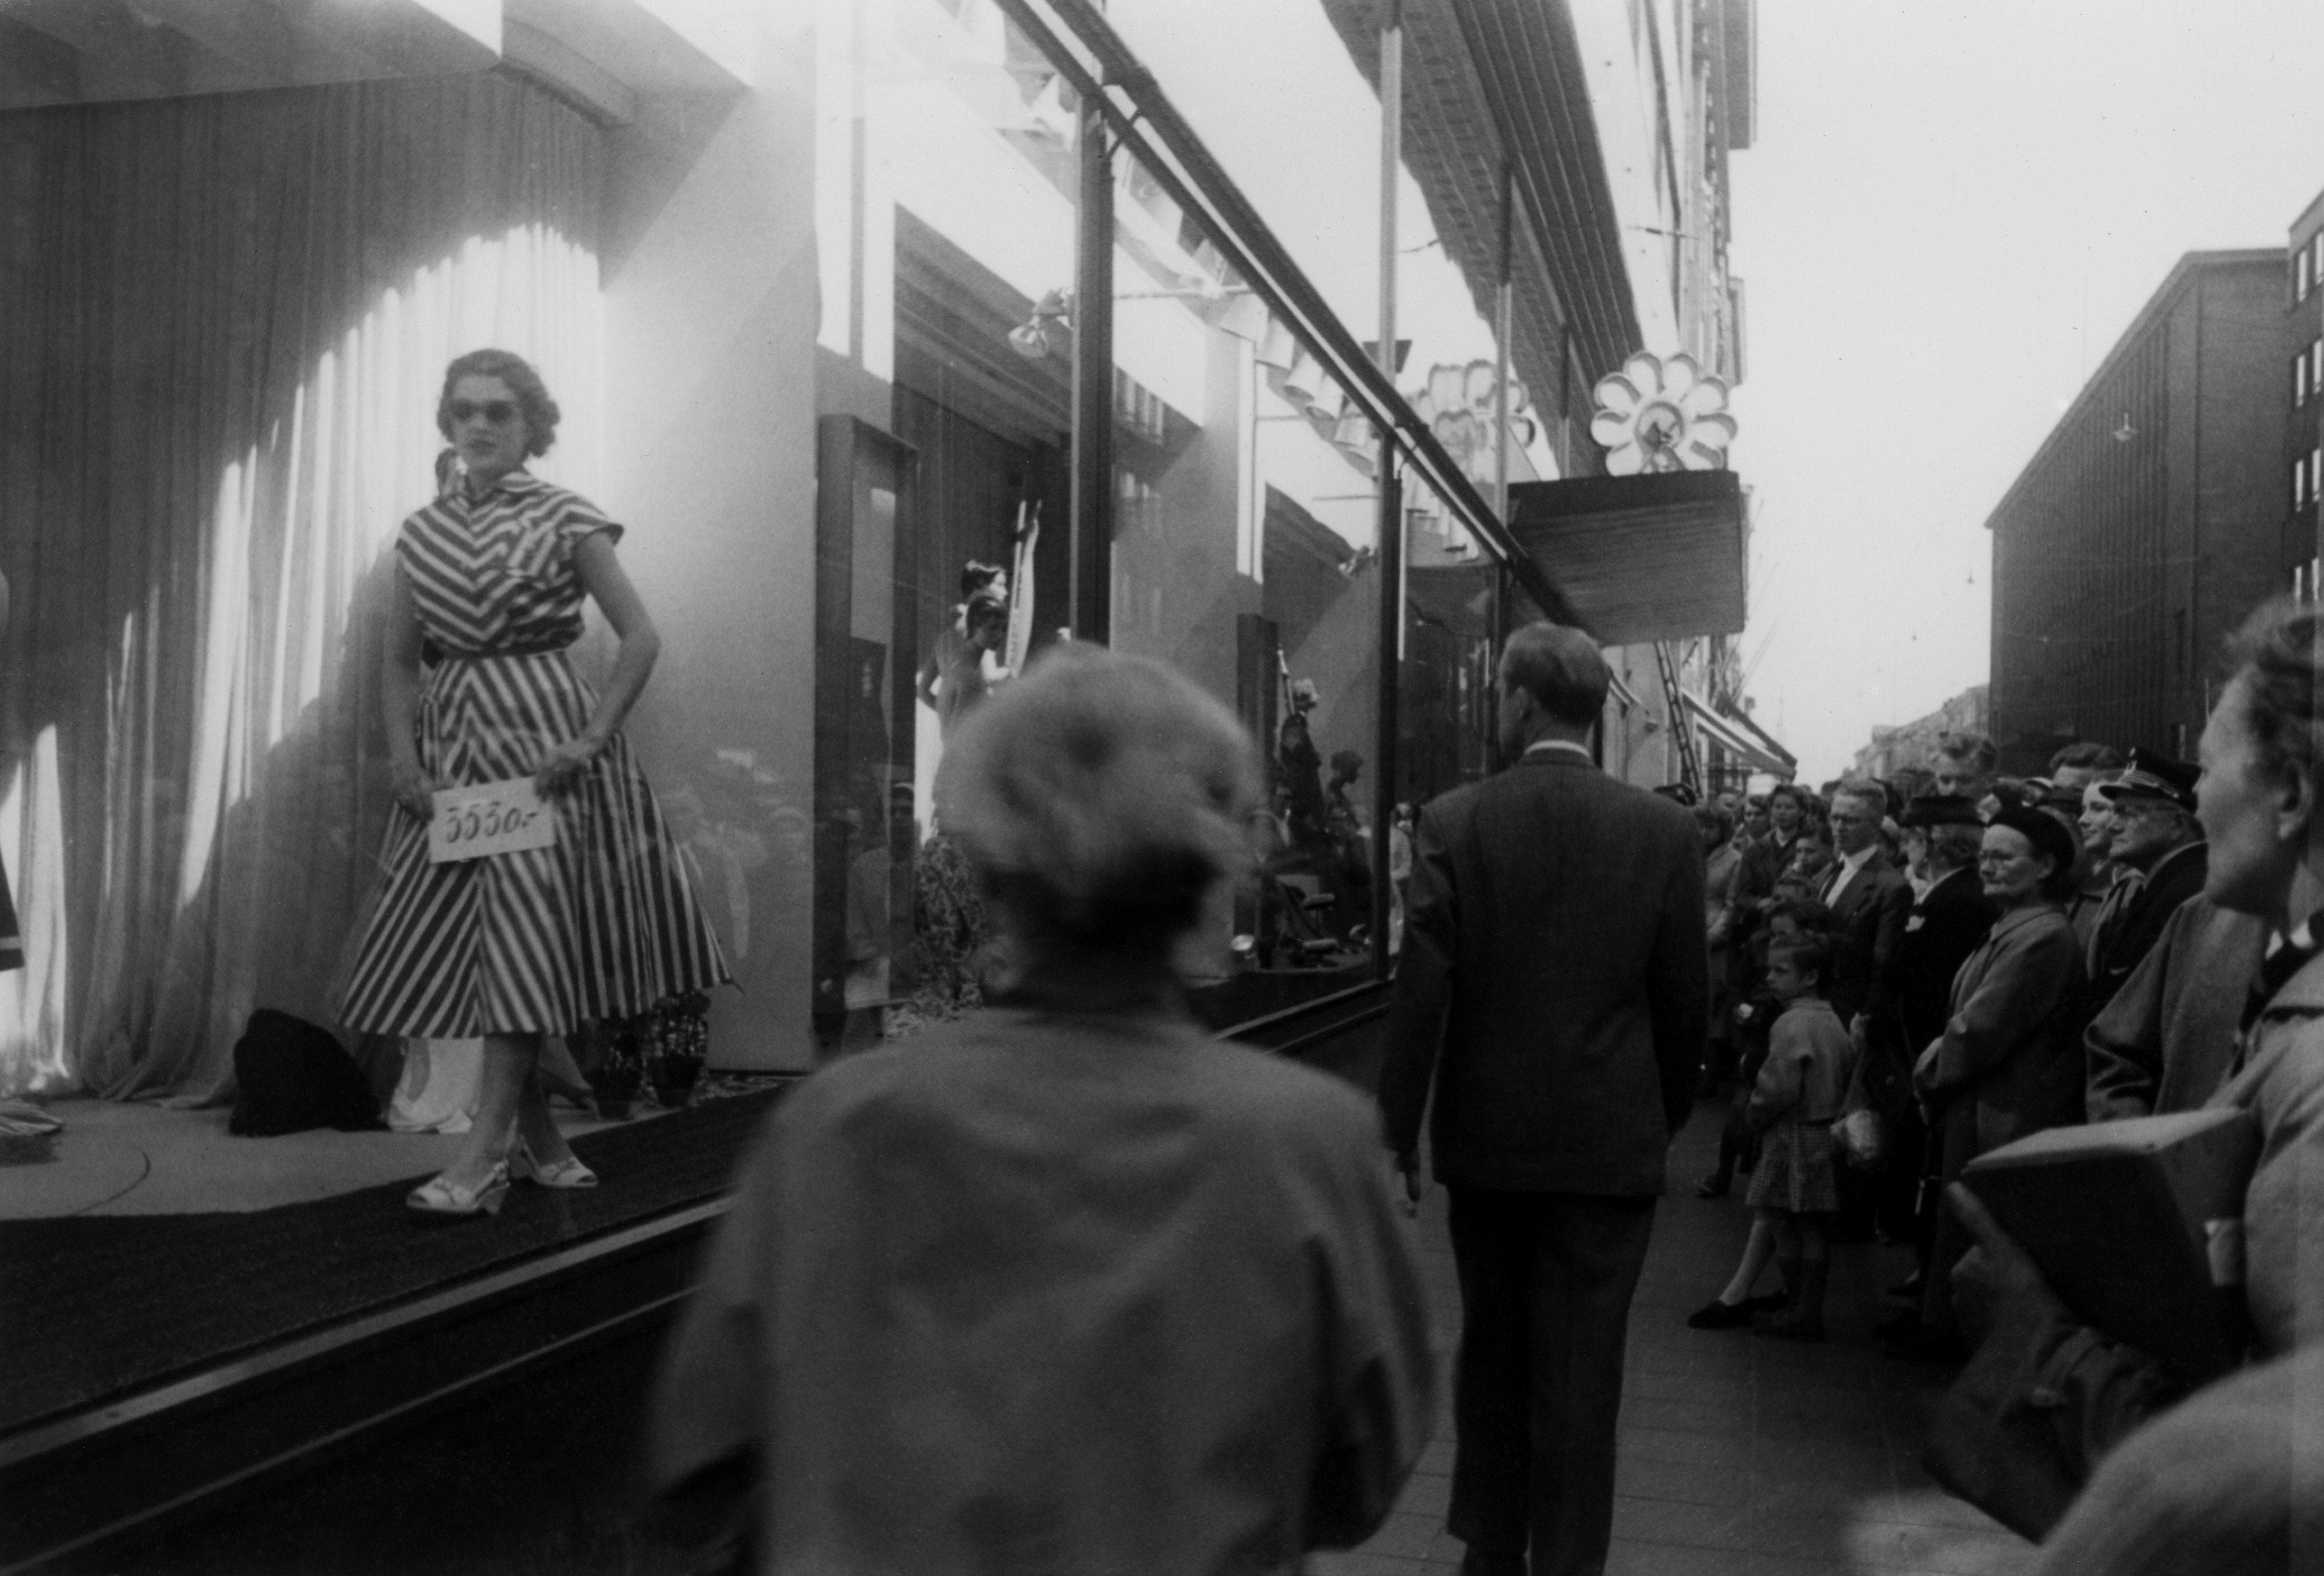 Jalankulkijoita Aleksanterinkadulla Elannon tavaratalon edustalla ilmeisesti 1956, näyteikkunassa mannekiini.